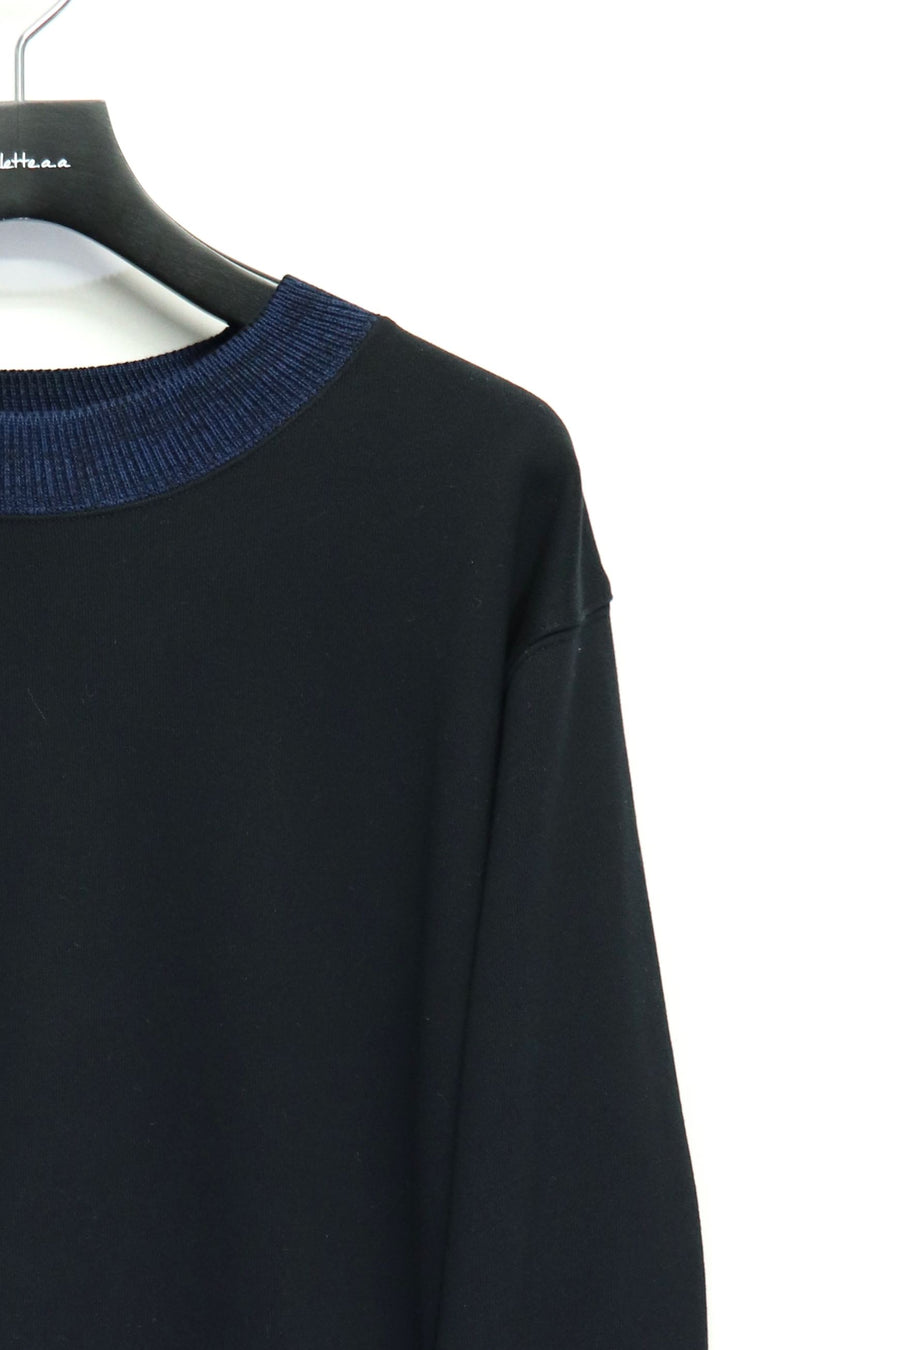 TOGA VIRILIS  Knit rib sweatshirt(BLACK)